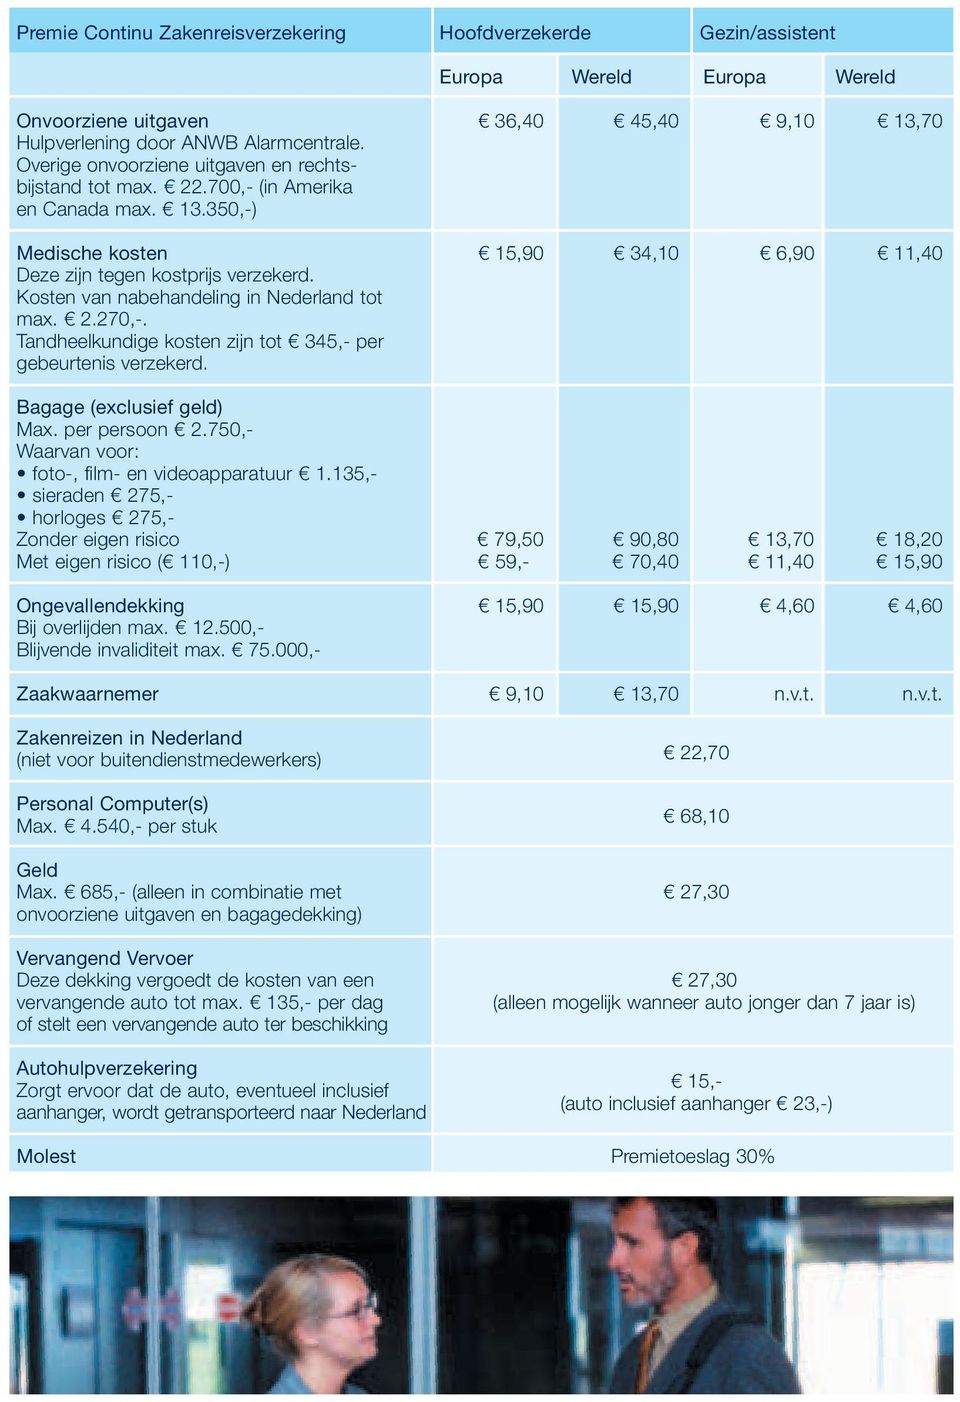 Kosten van nabehandeling in Nederland tot max. 2.270,-. Tandheelkundige kosten zijn tot 345,- per gebeurtenis verzekerd. Bagage (exclusief geld) Max. per persoon 2.